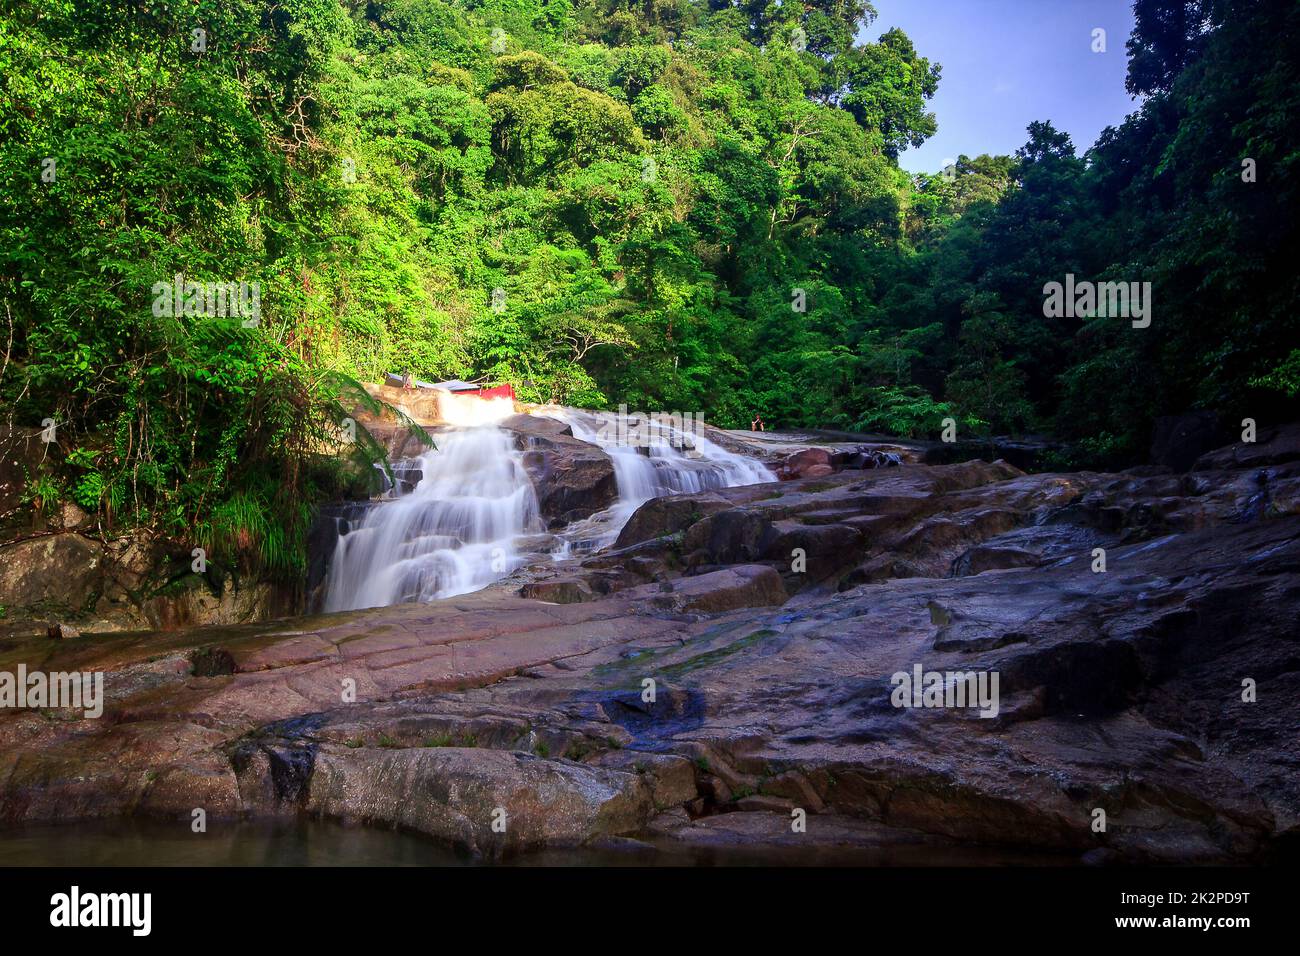 La cascada Nan Sung es una atracción turística ecológica de la provincia de Phatthalung, Tailandia. Foto de stock